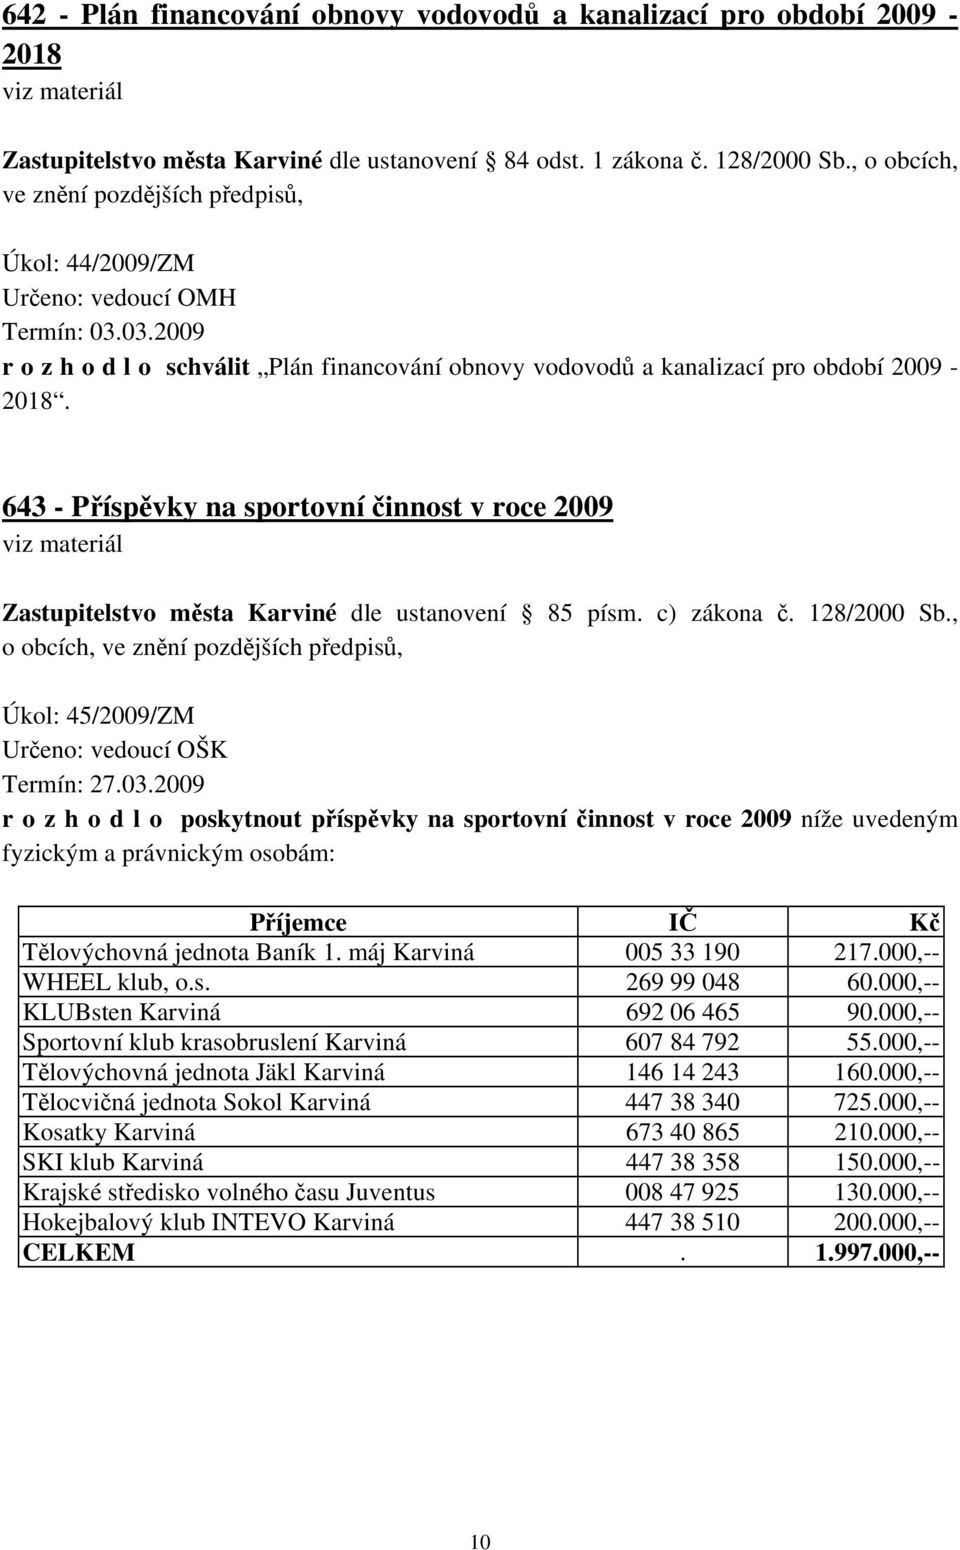 643 - Příspěvky na sportovní činnost v roce 2009 viz materiál Zastupitelstvo města Karviné dle ustanovení 85 písm. c) zákona č. 128/2000 Sb.